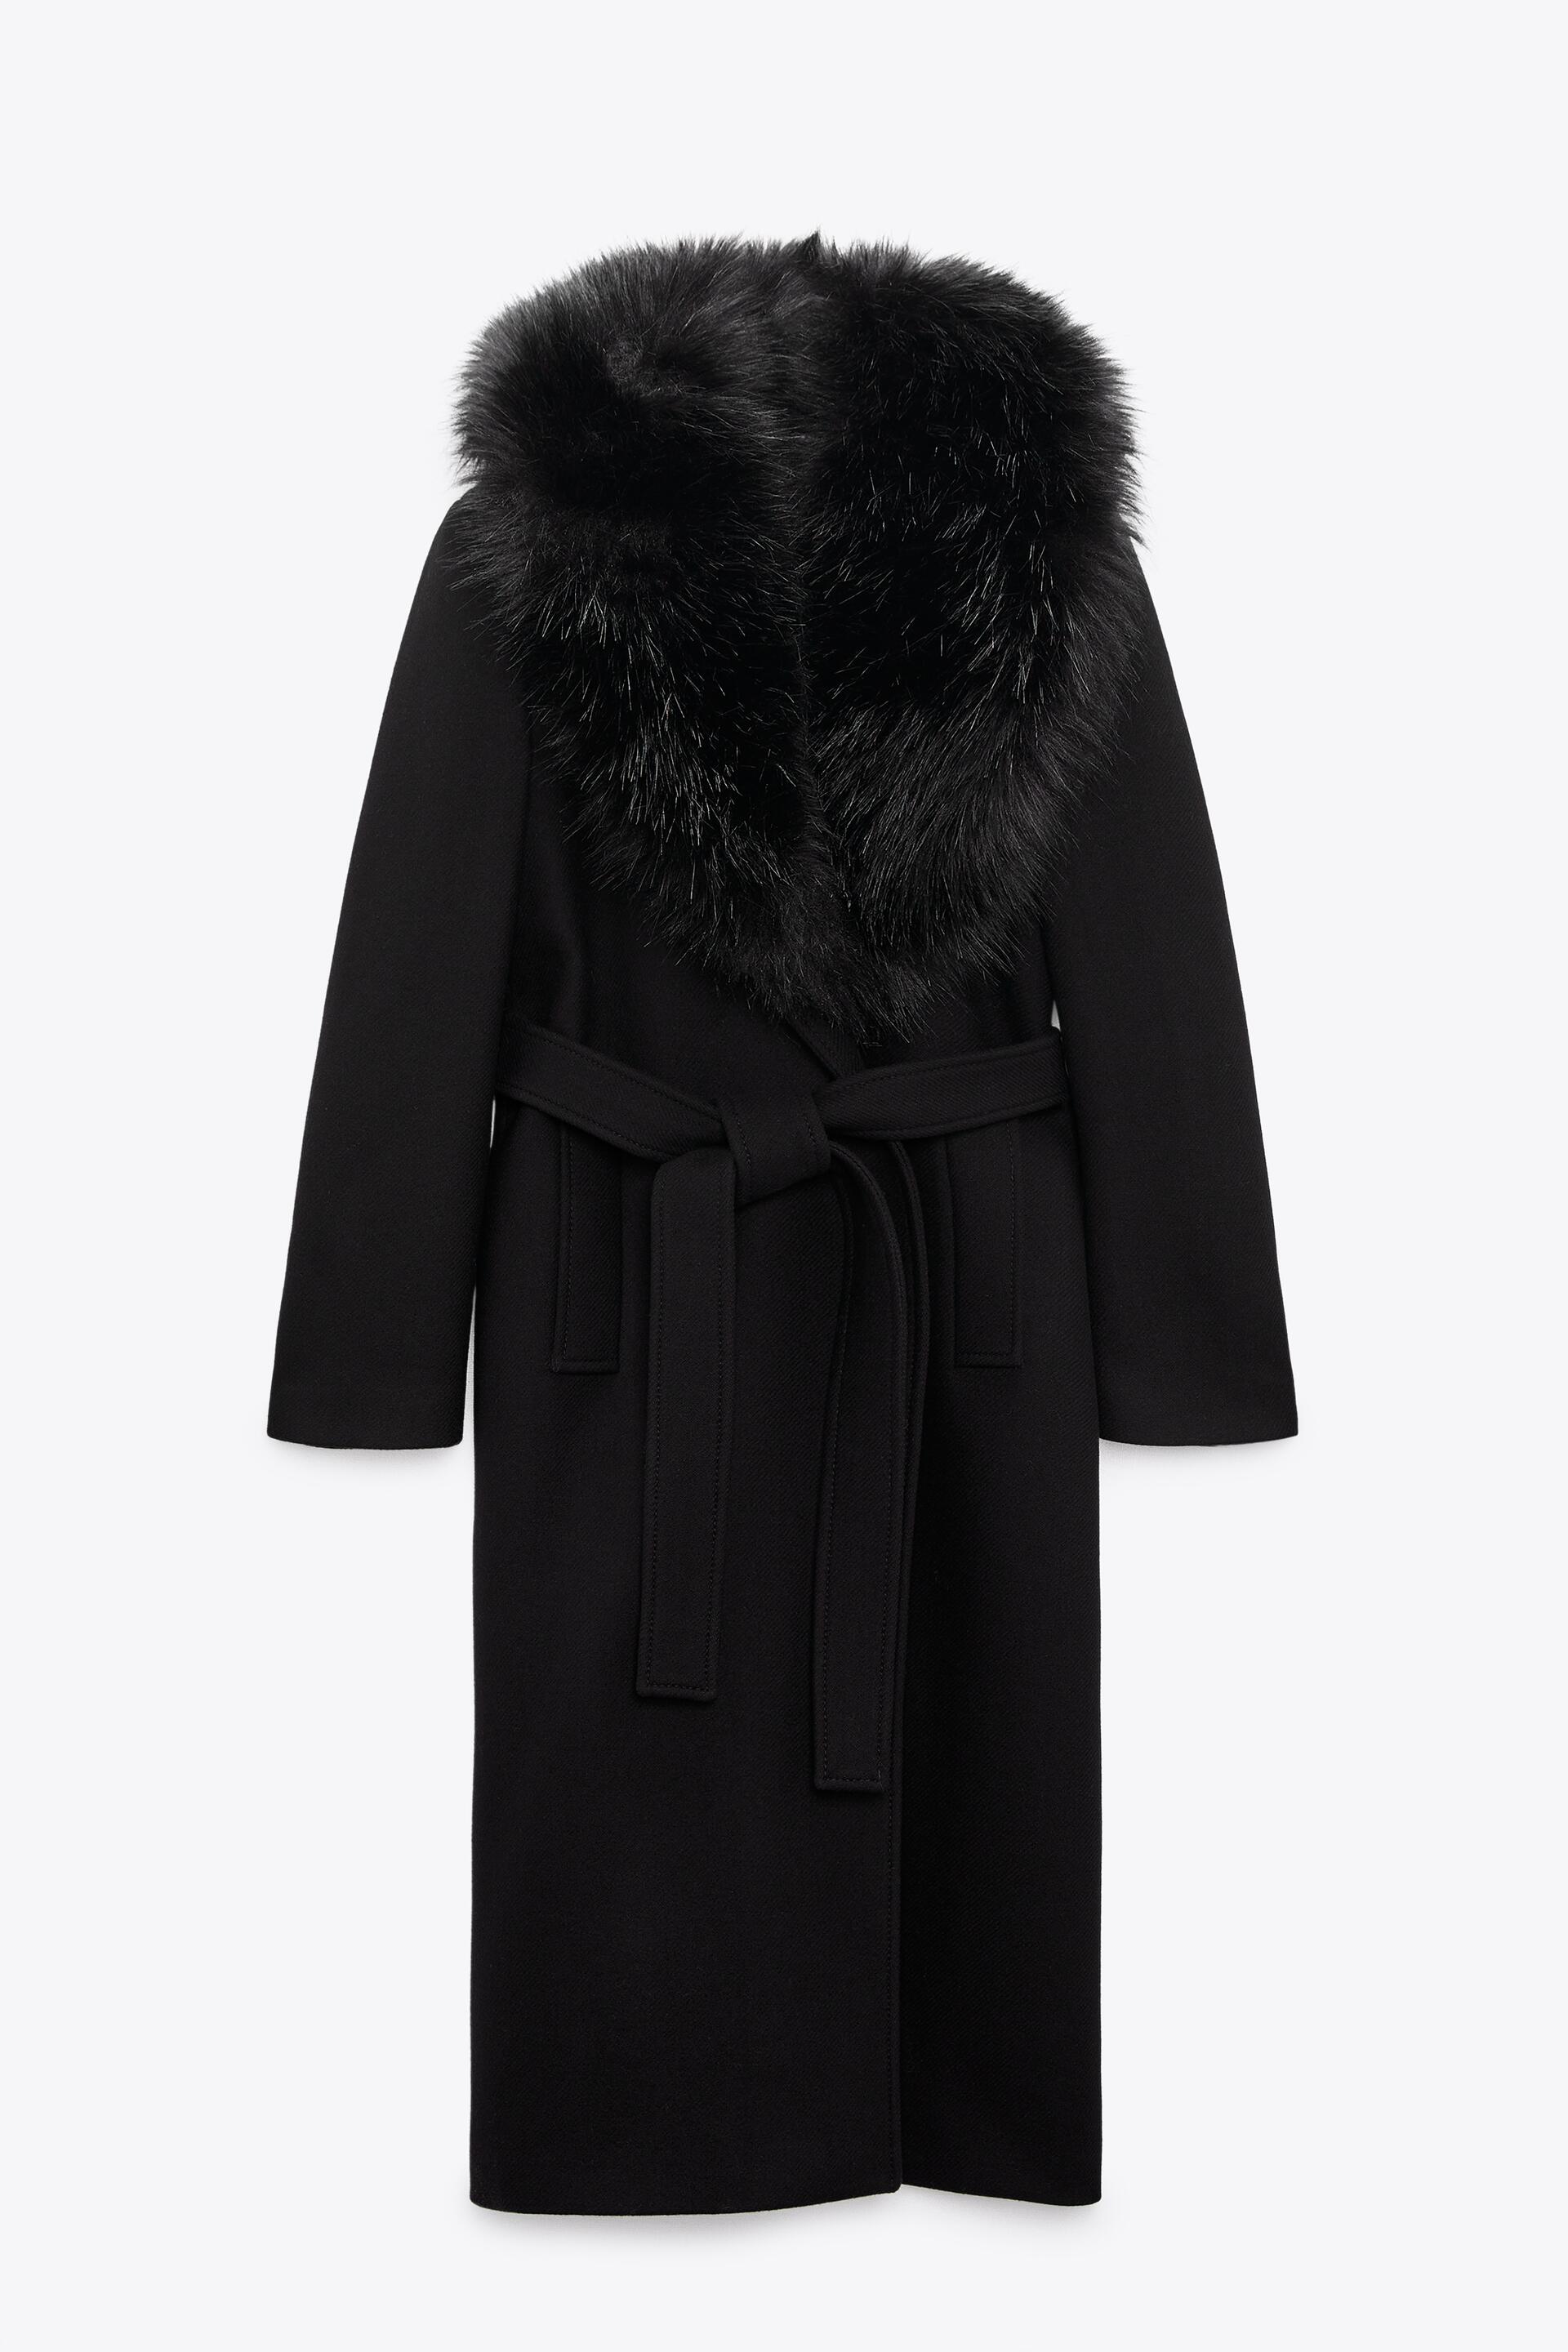 Пальто женское ZARA 08551744 черное M (доставка из-за рубежа)